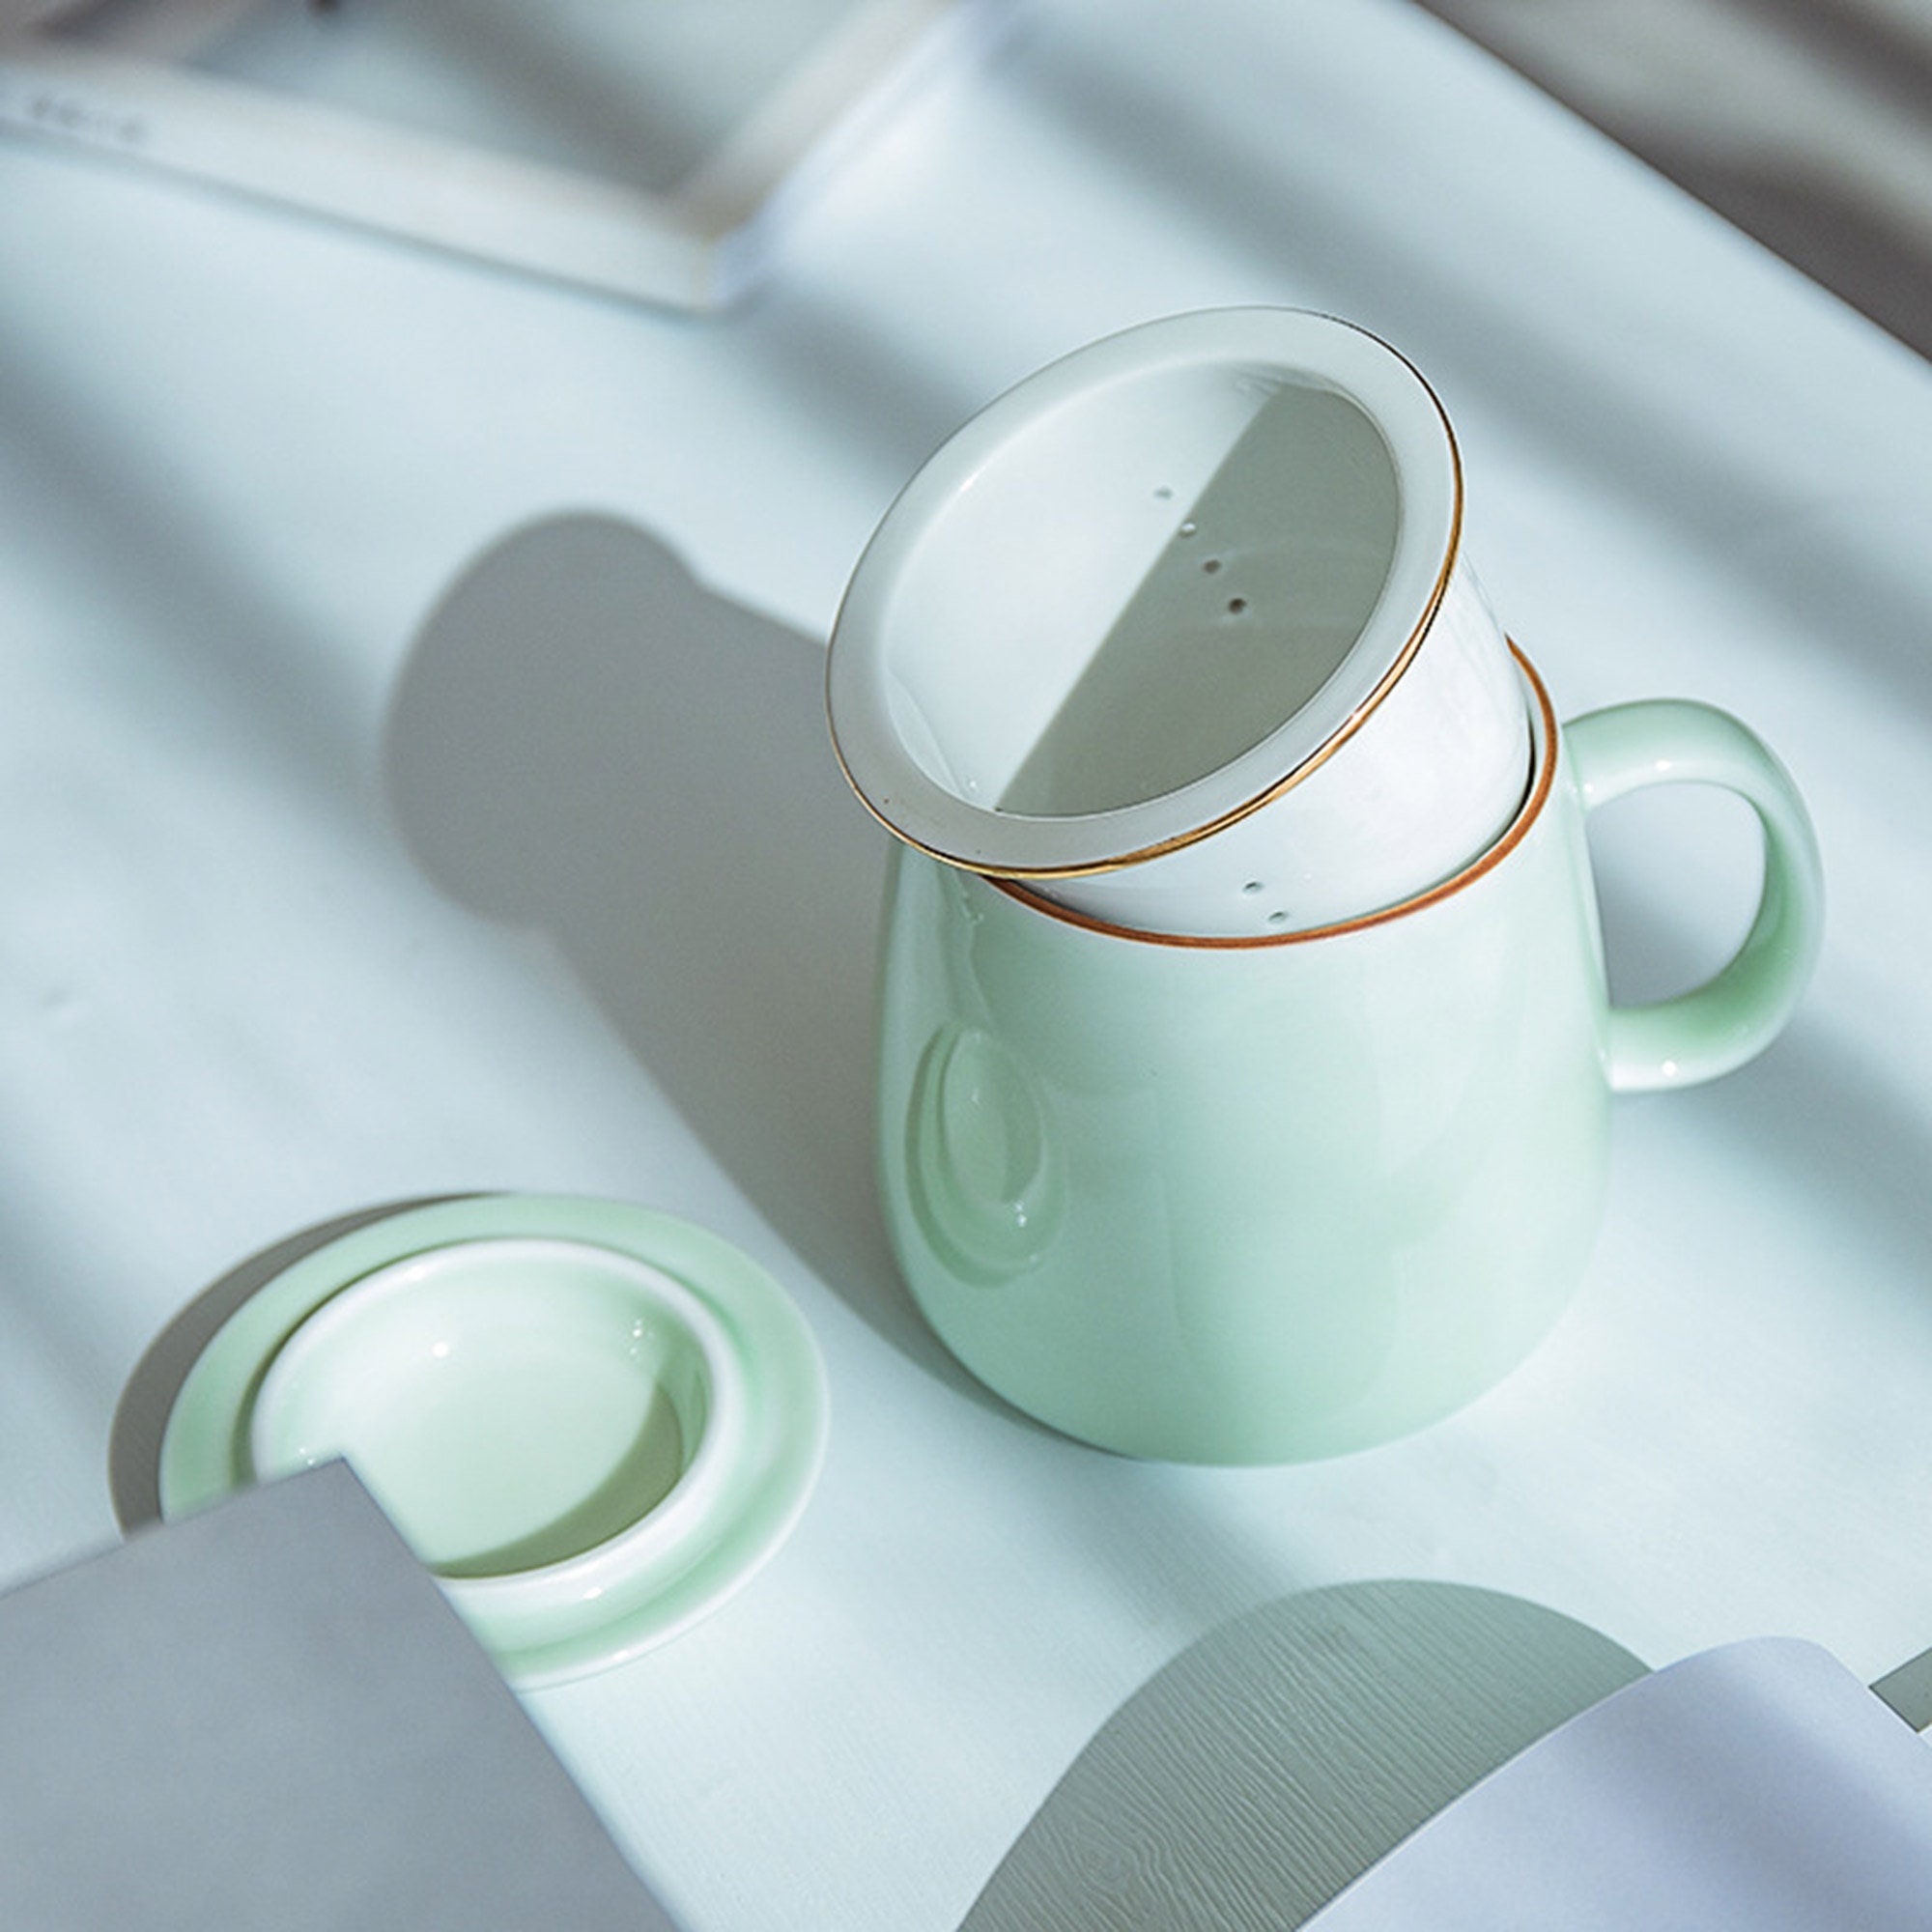 Coffret tasse avec infuseur à thé en porcelaine motifs dorés PALM